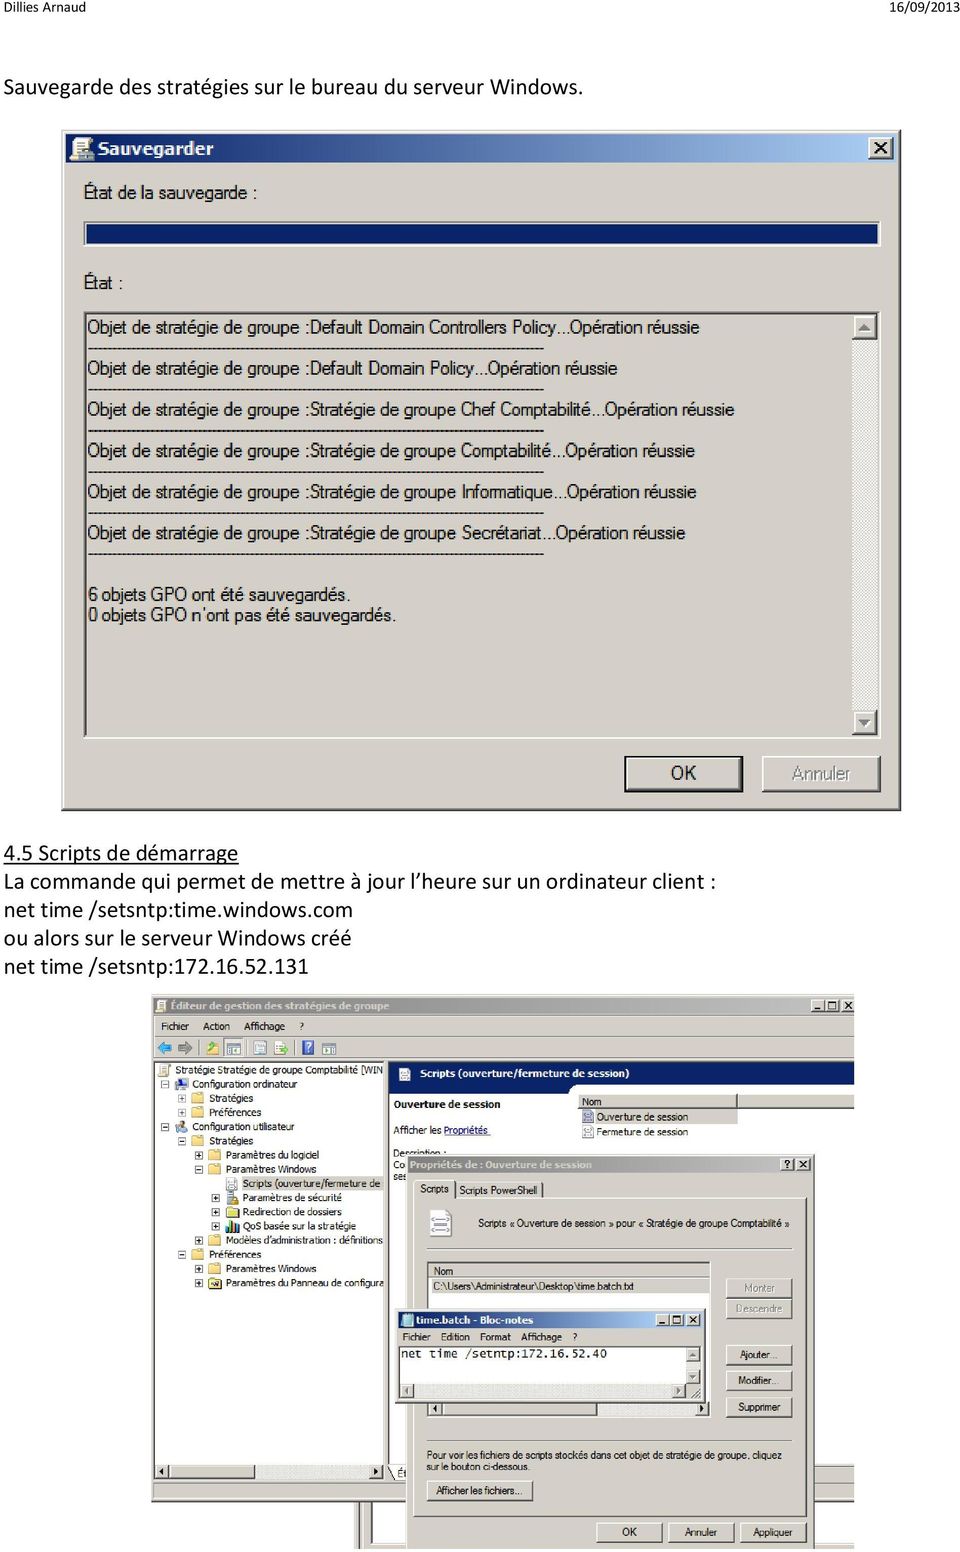 heure sur un ordinateur client : net time /setsntp:time.windows.